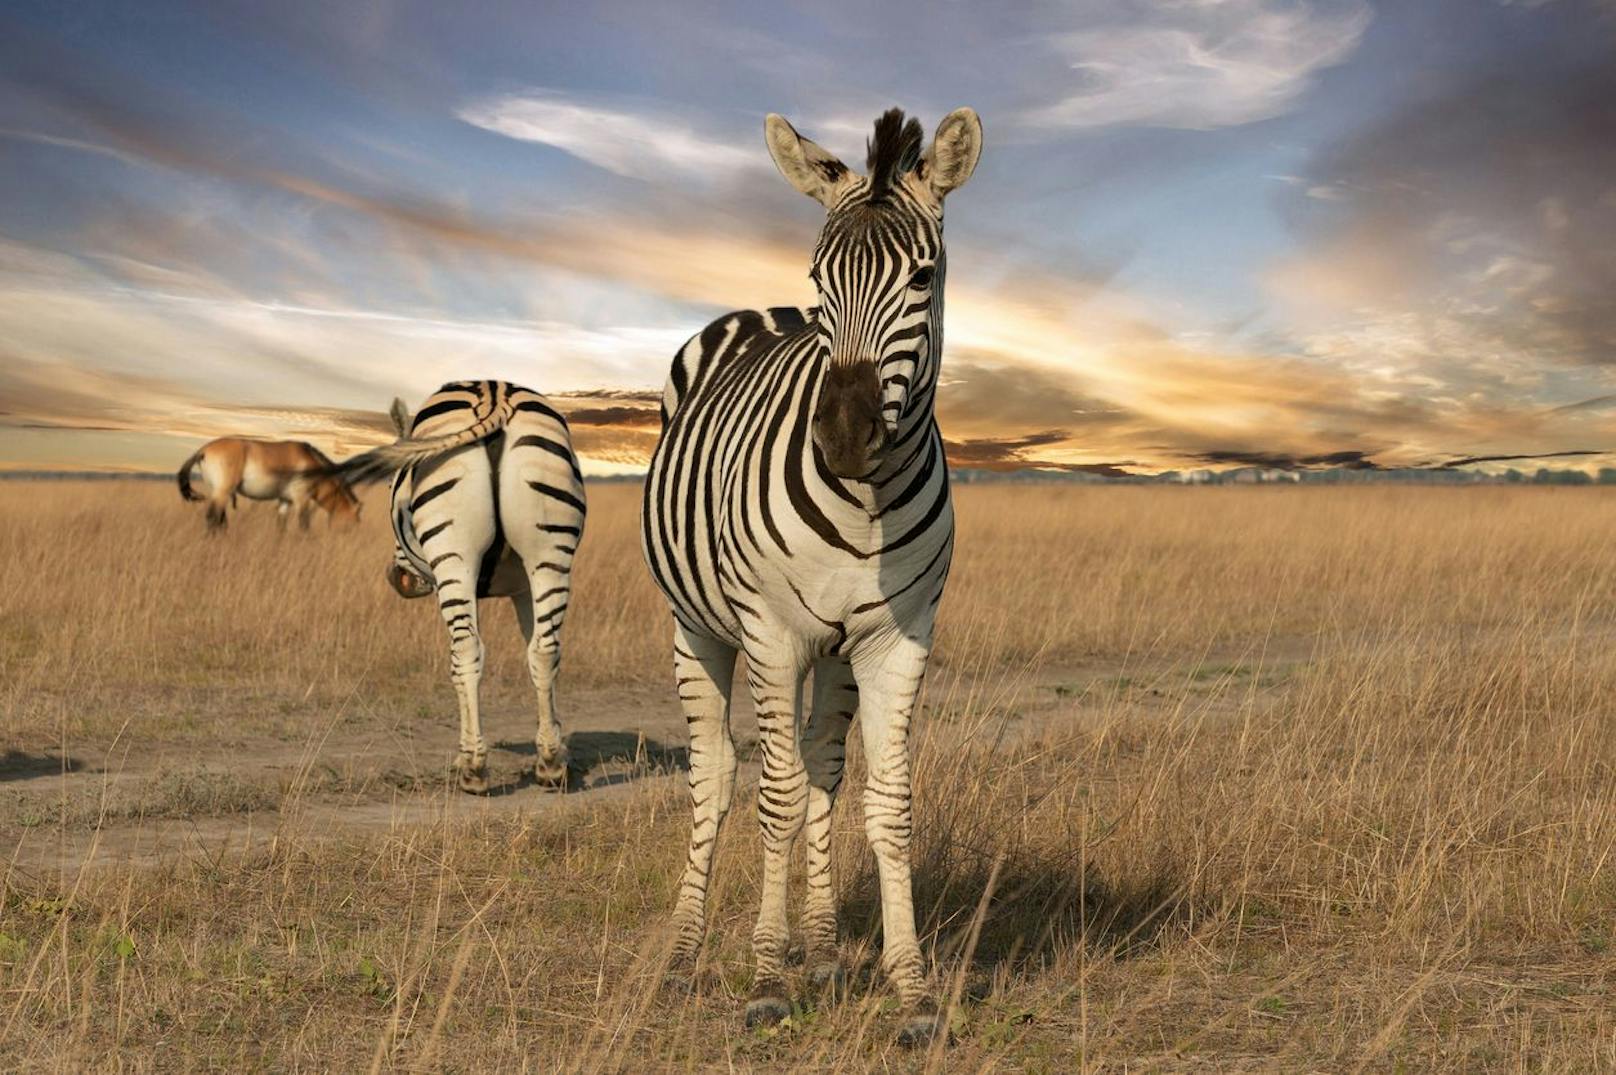 Die Streifen sollen aber nicht nur hübsch sein, sondern dienen als Tarnung. In einer Herde ist es für Raubtiere irrsinnig schwierig ein einzelnes Zebra zu erkennen und zu fixieren. 